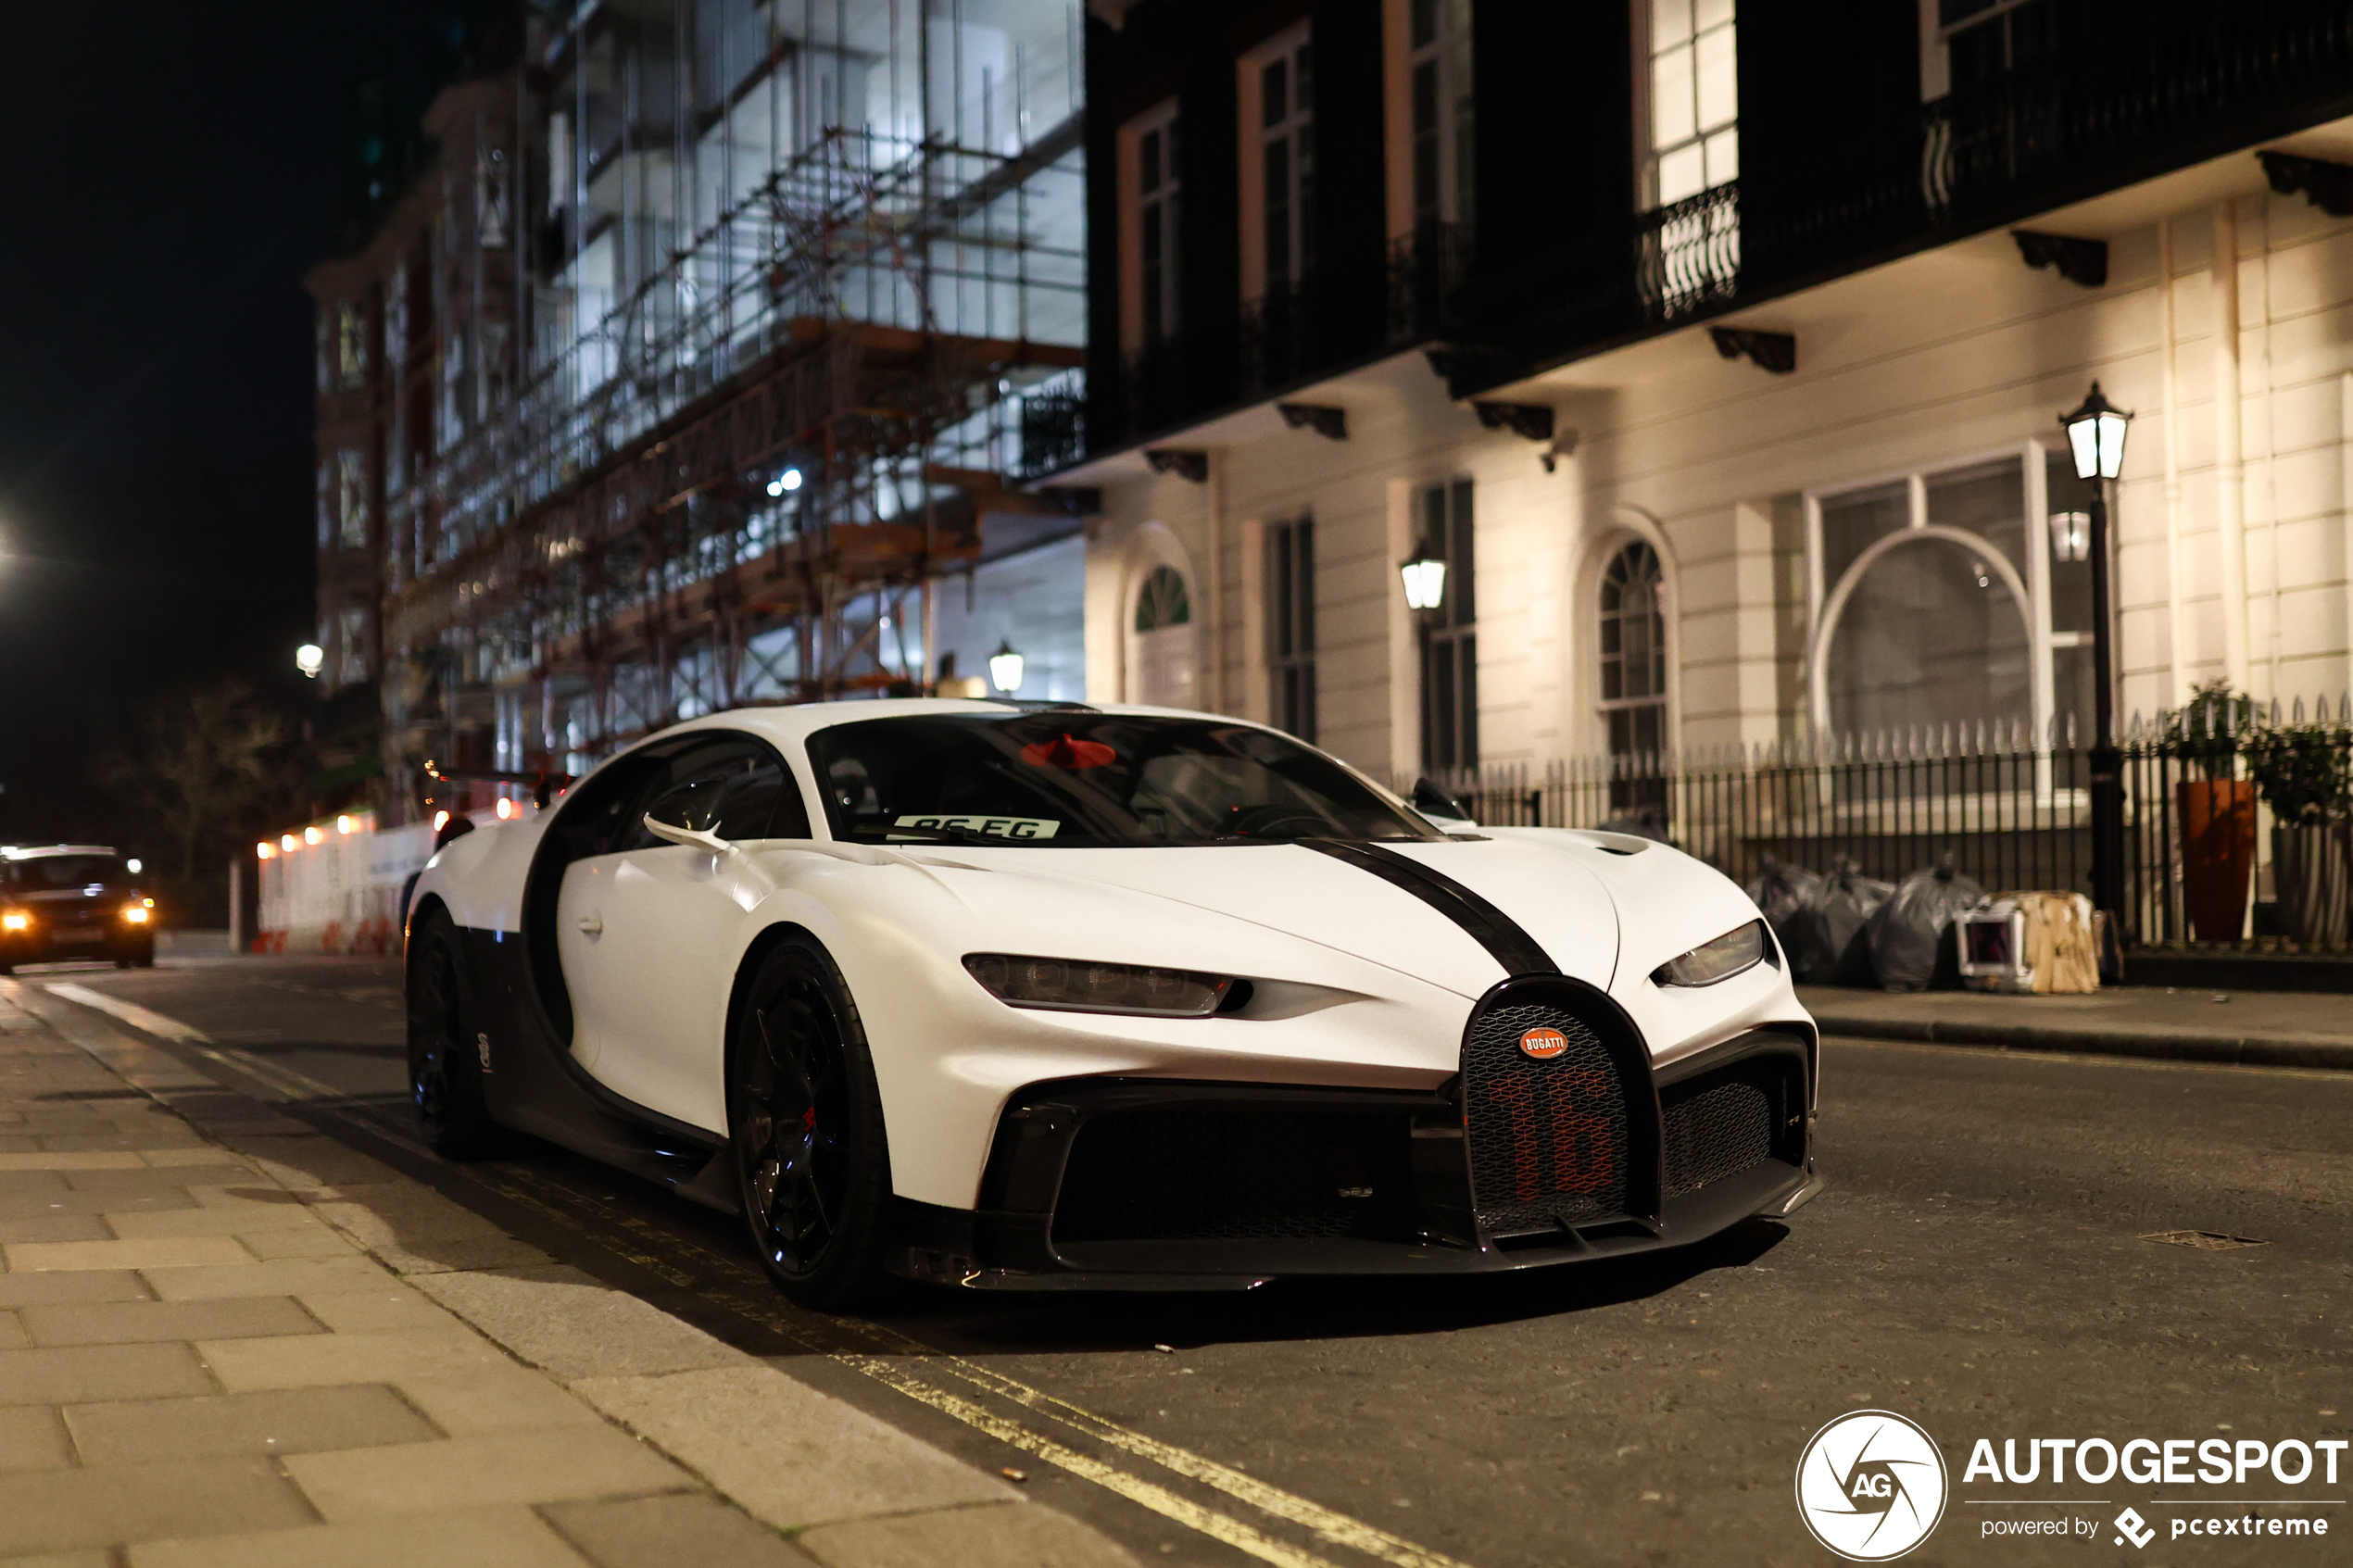 Nachtelijk Londen verwent spotter met Bugatti Chiron Pur Sport